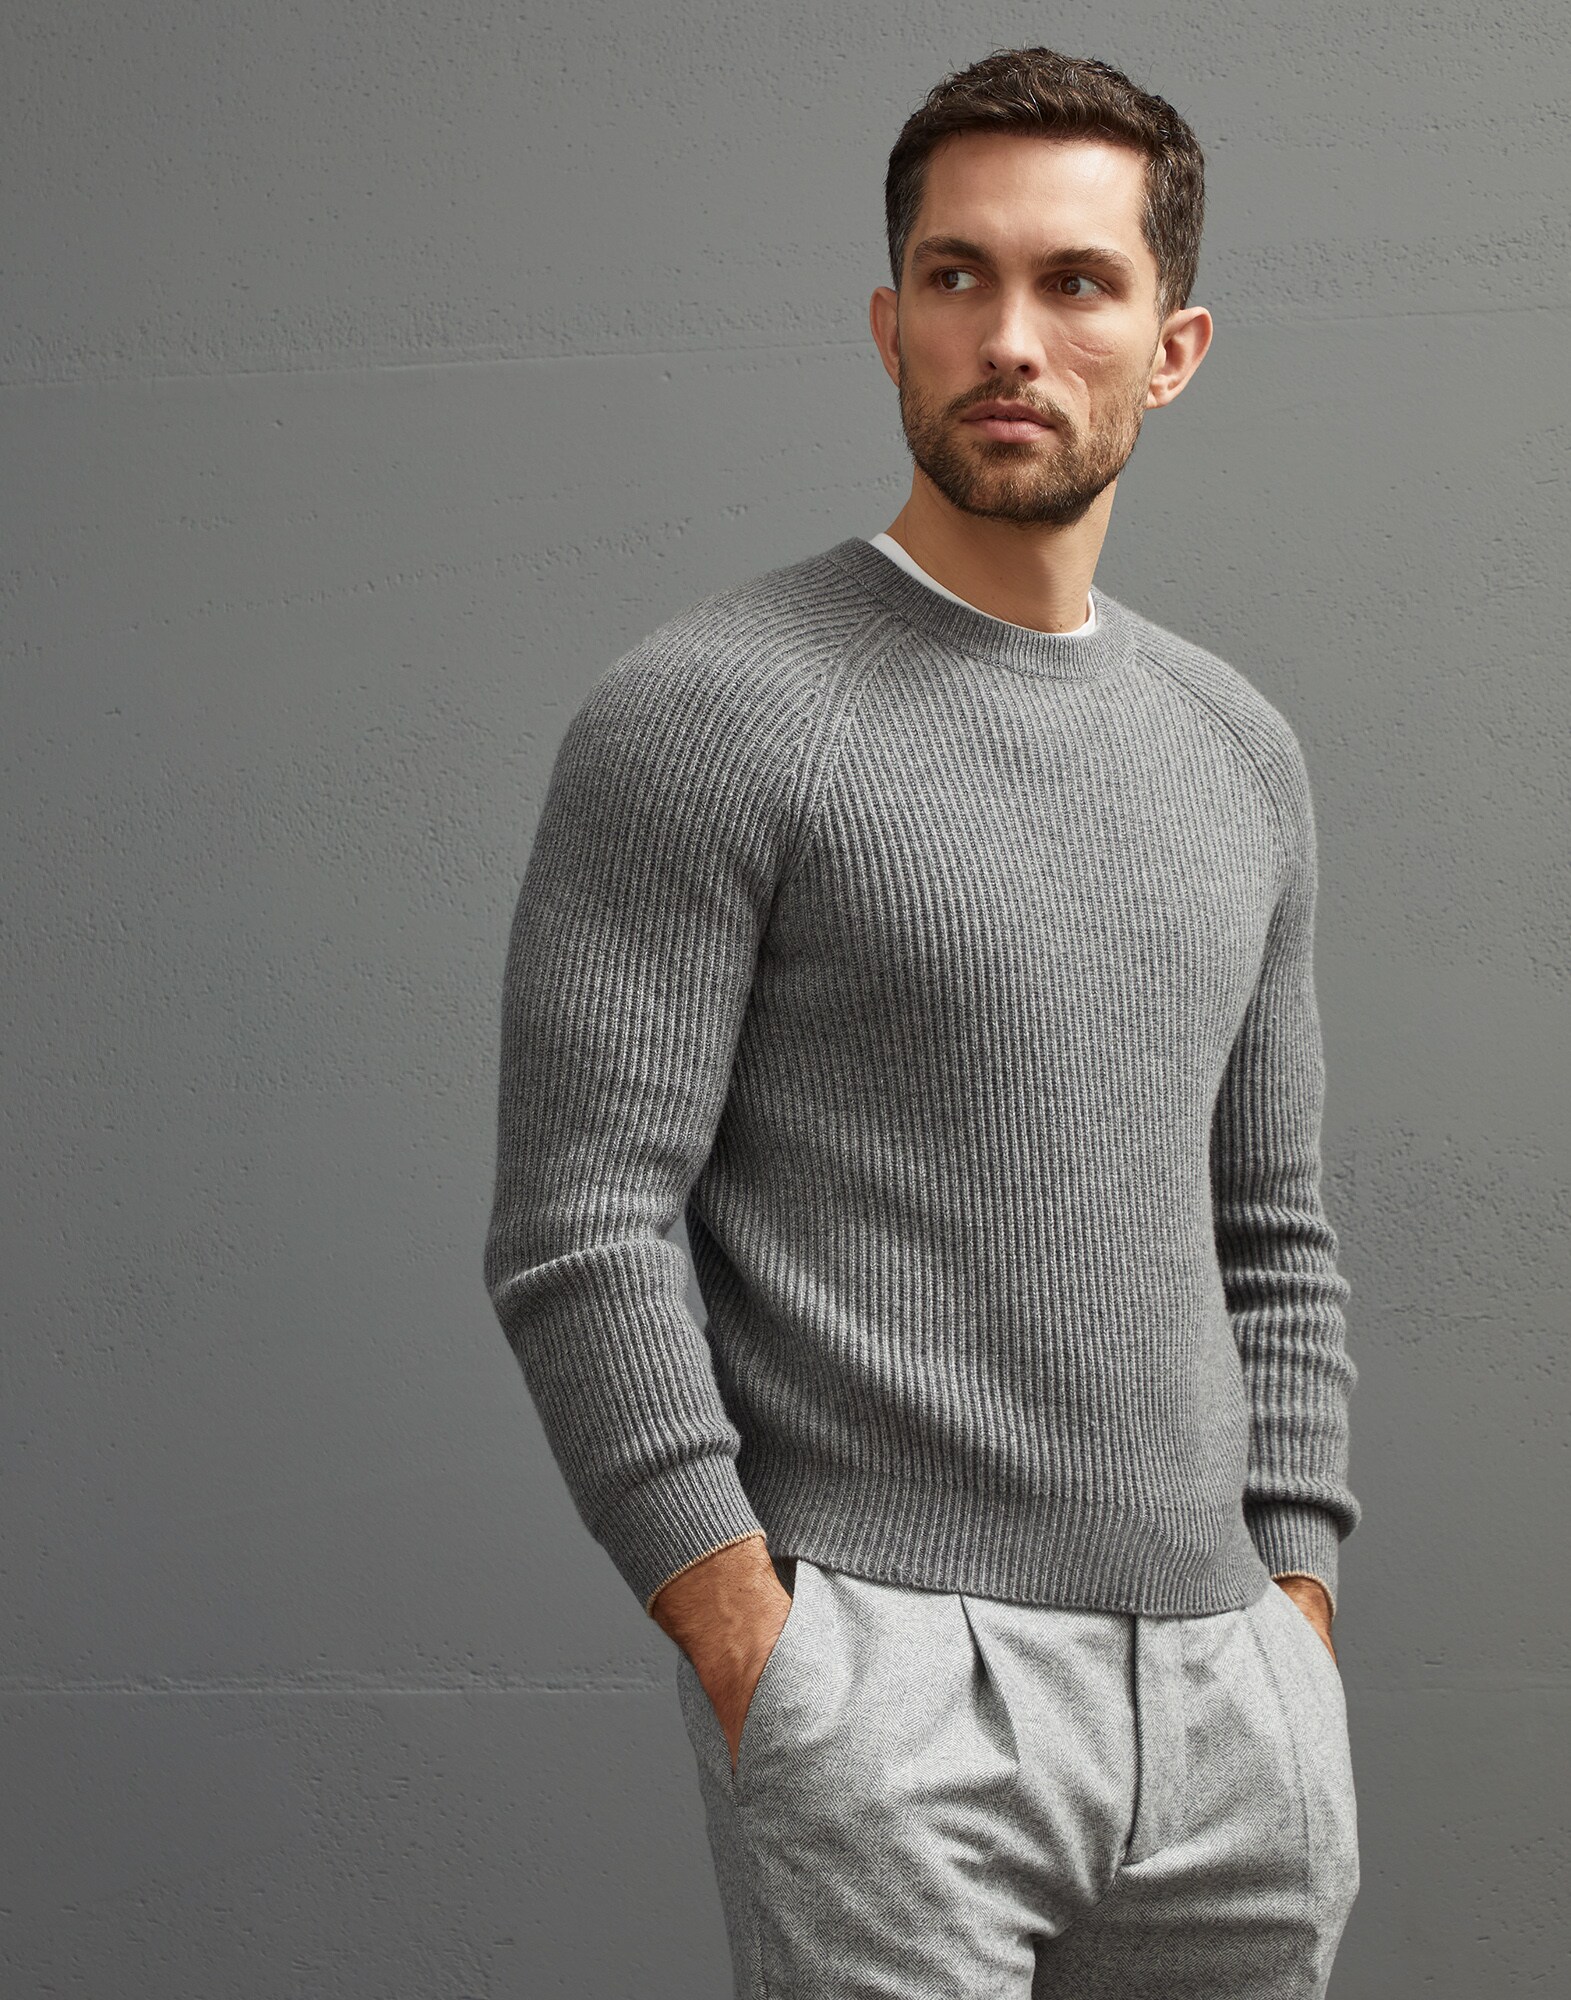 English Rib knit sweater